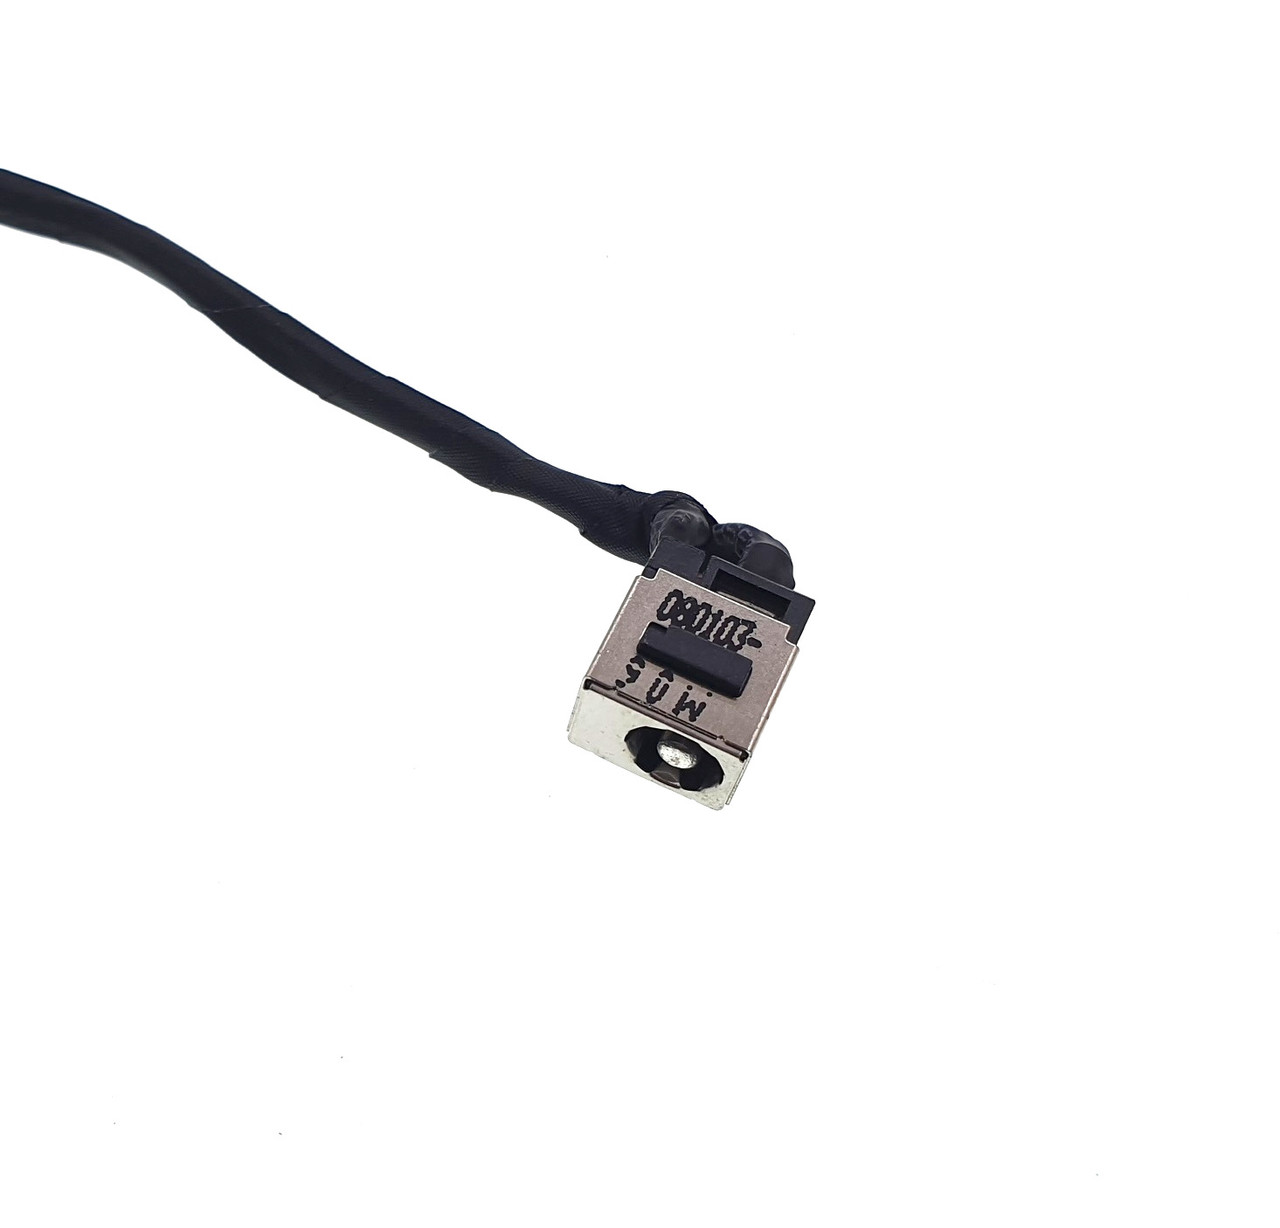 DC-IN Power Jack Socket Connector Plug Port With Cable Wire Harness For Lenovo IdeaPad Y460 Y460P Y560 Y560A Y560D Y560P Laptop Notebook